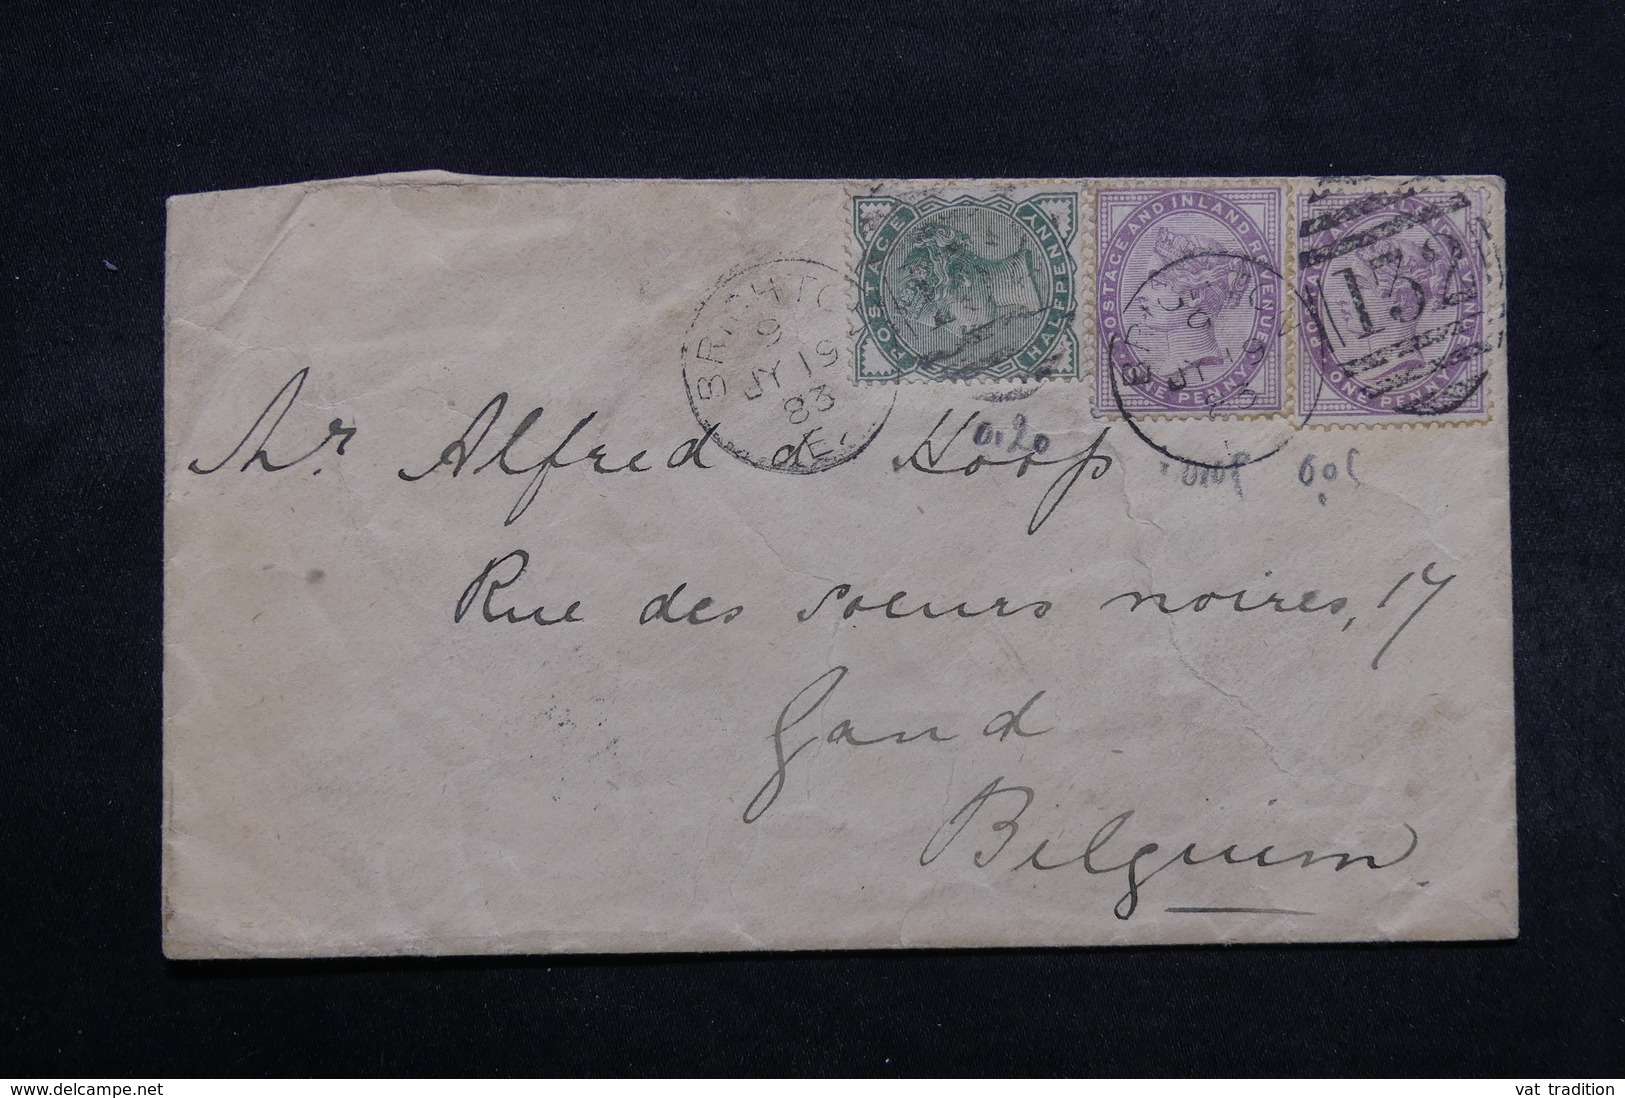 ROYAUME UNI - Enveloppe De Brighton Pour La Belgique En 1883 , Affranchissement Plaisant - L 32513 - Briefe U. Dokumente